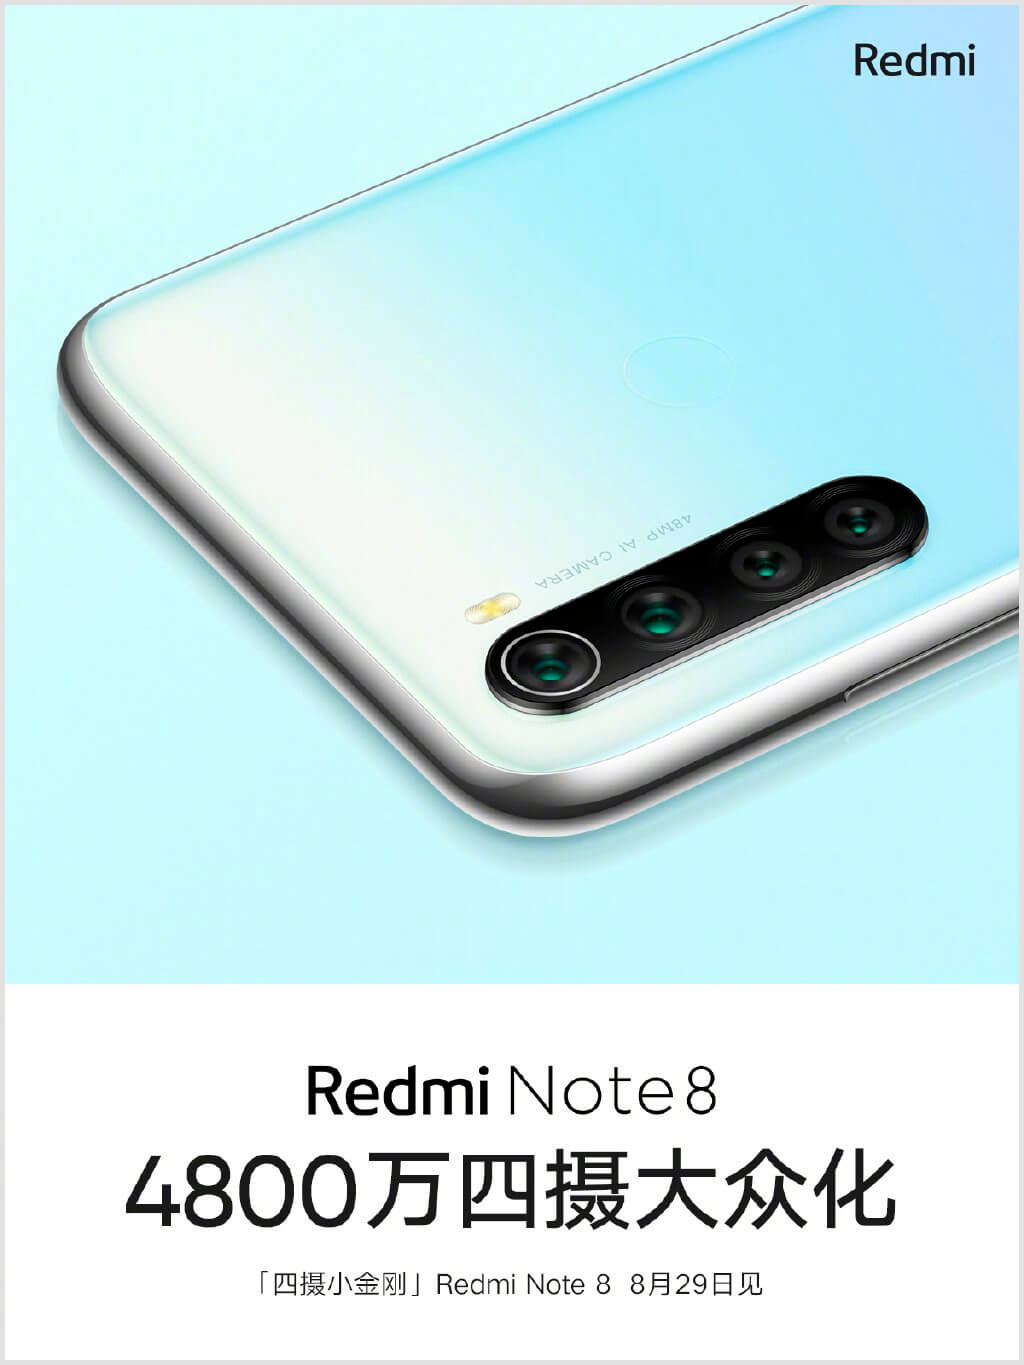 Diseño del Redmi Note 8